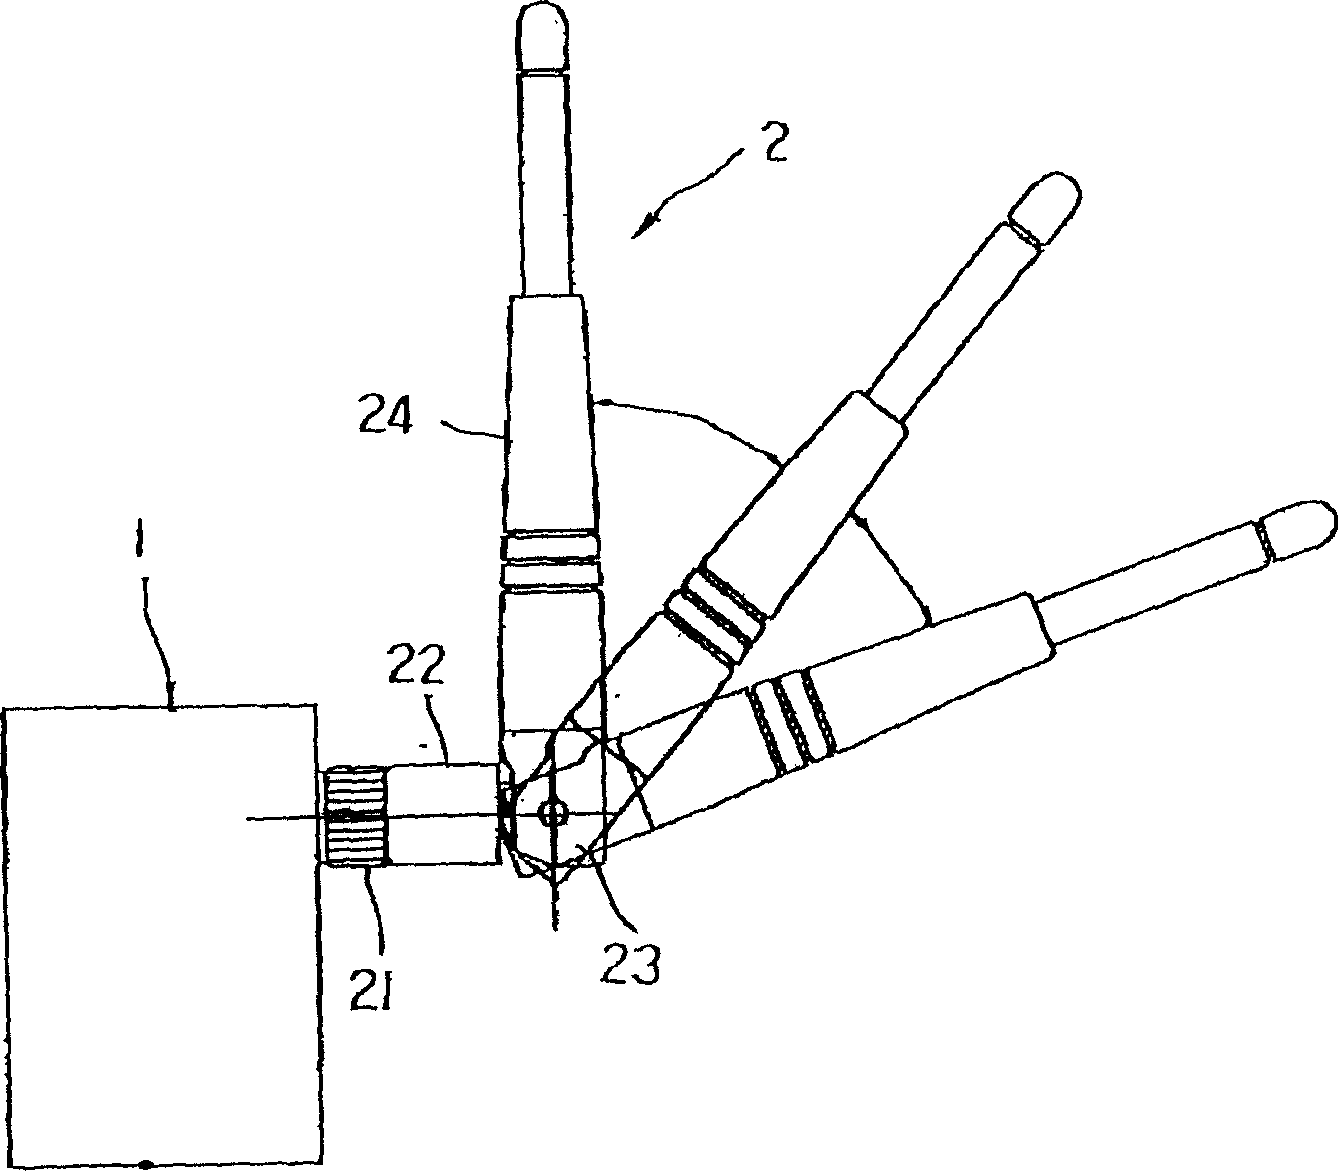 Antenna connector